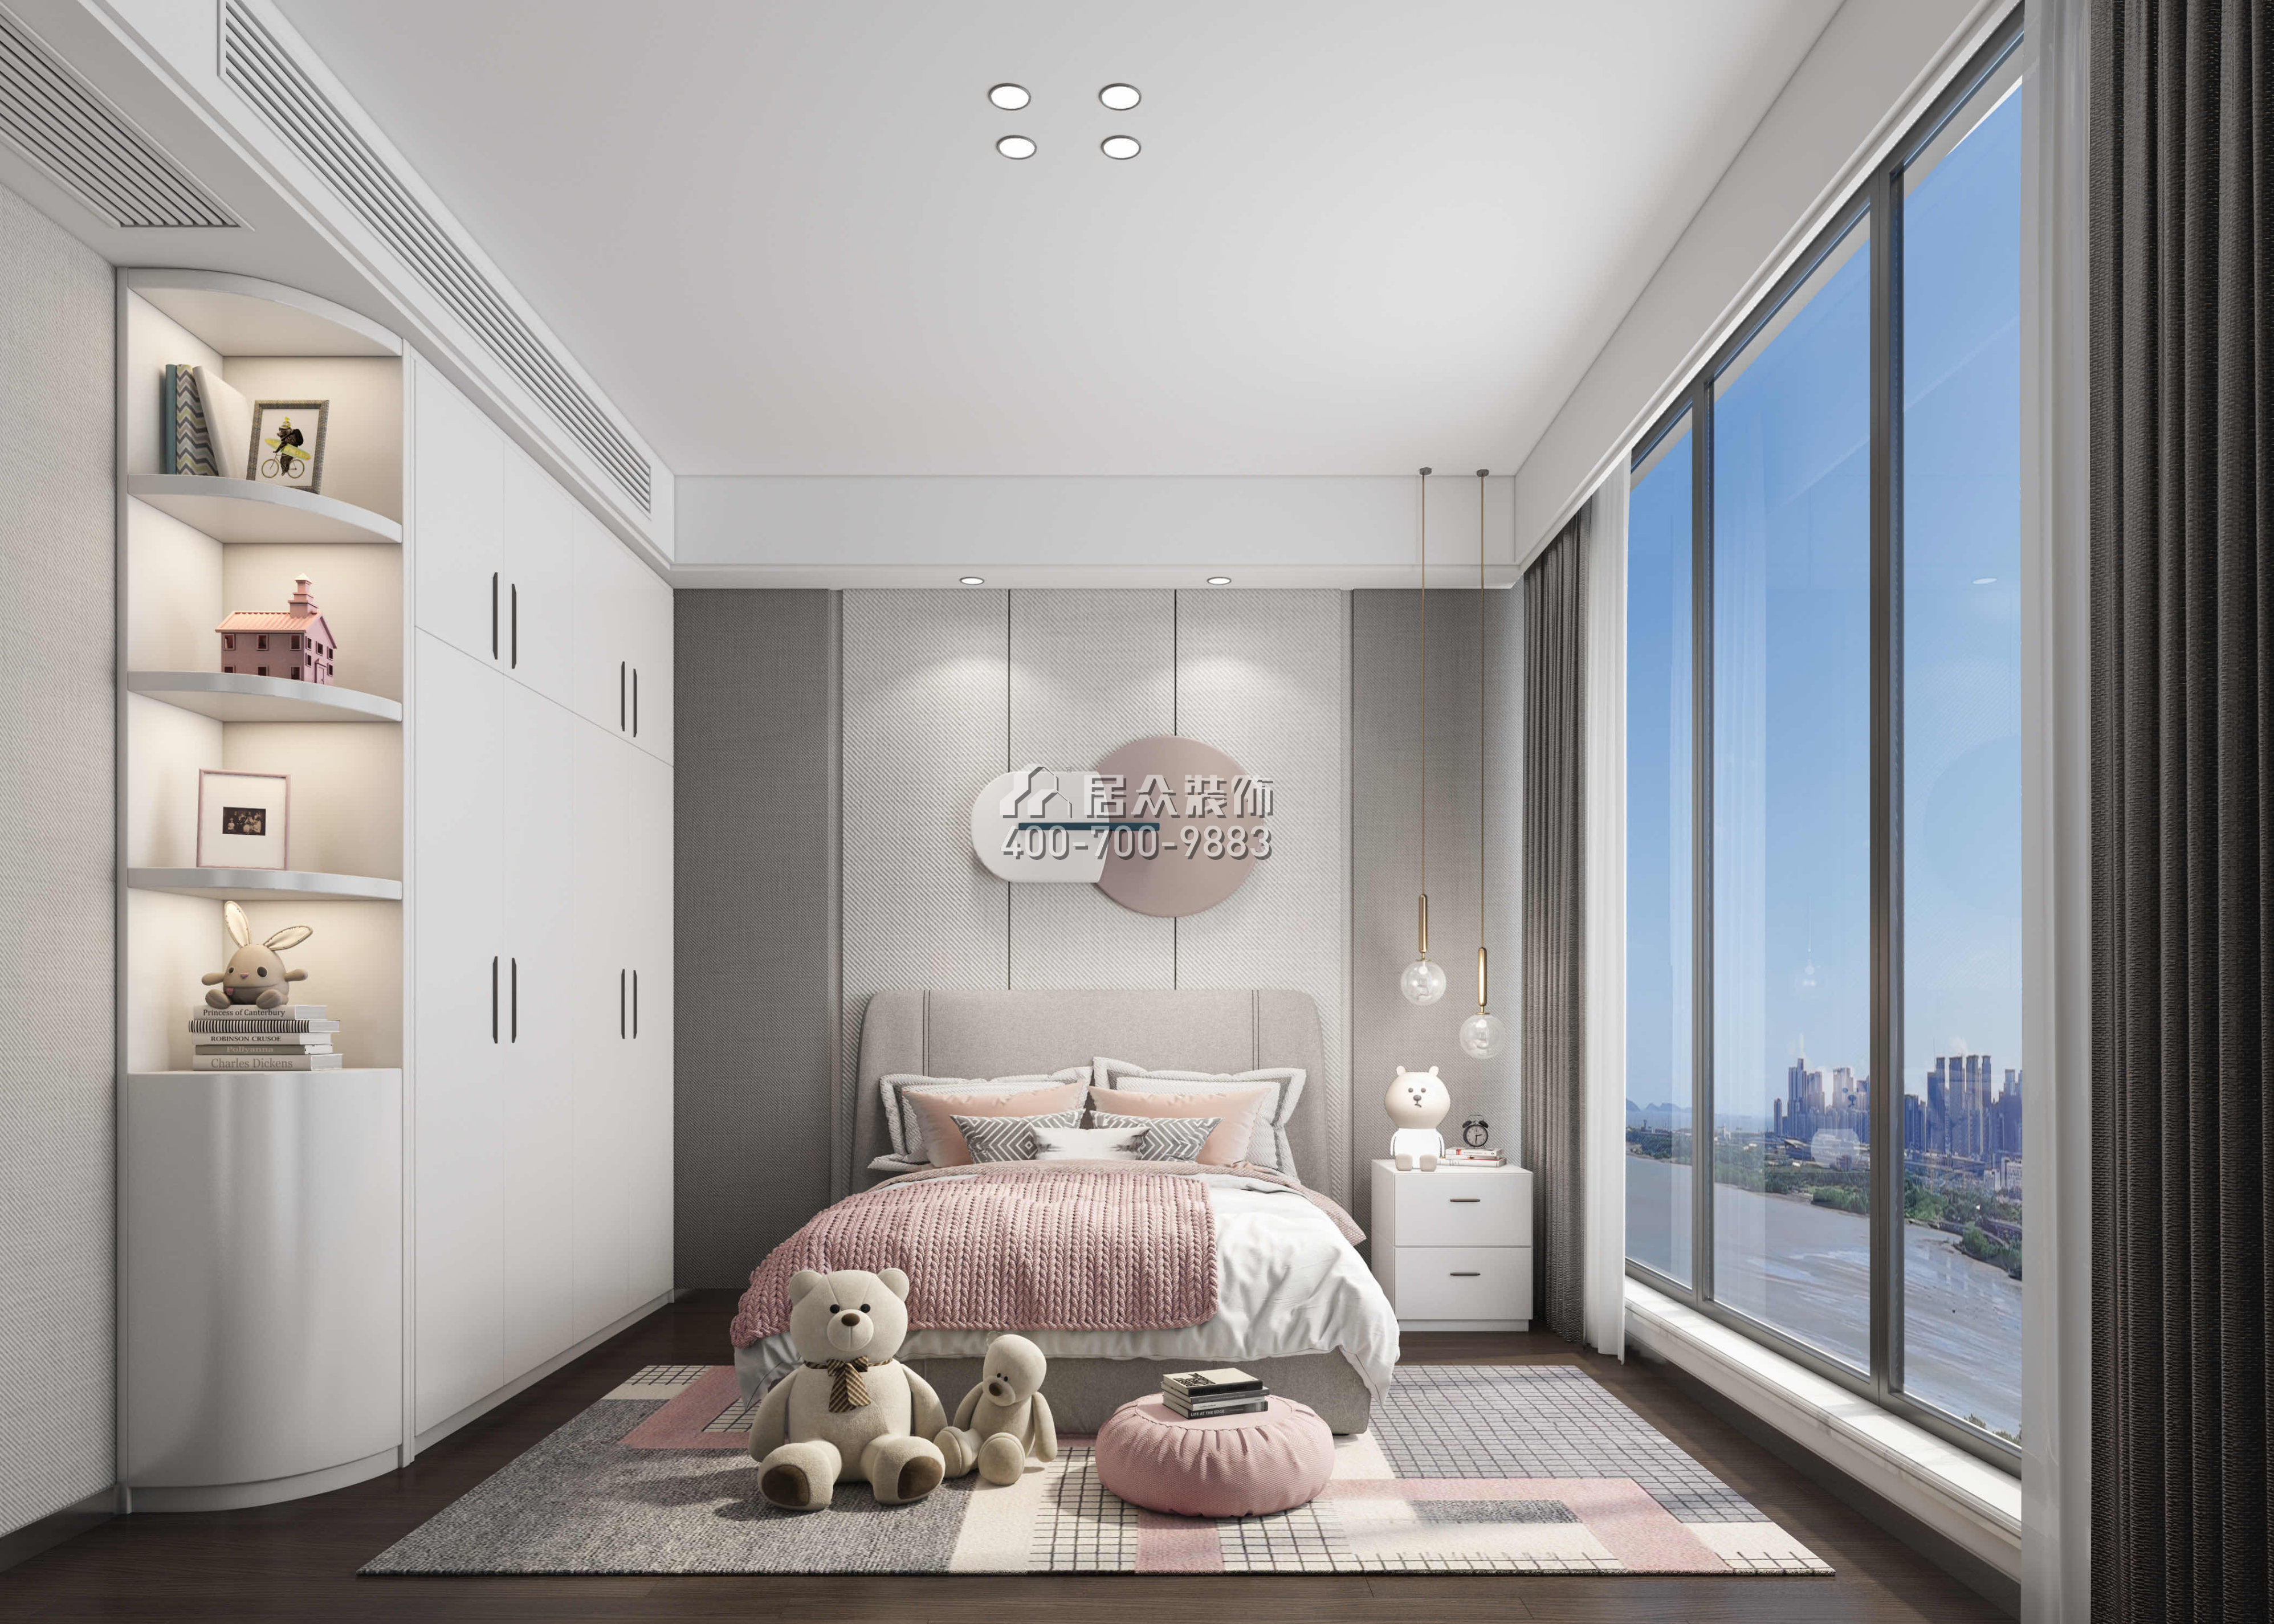 紅樹西岸190平方米現代簡約風格平層戶型臥室裝修效果圖